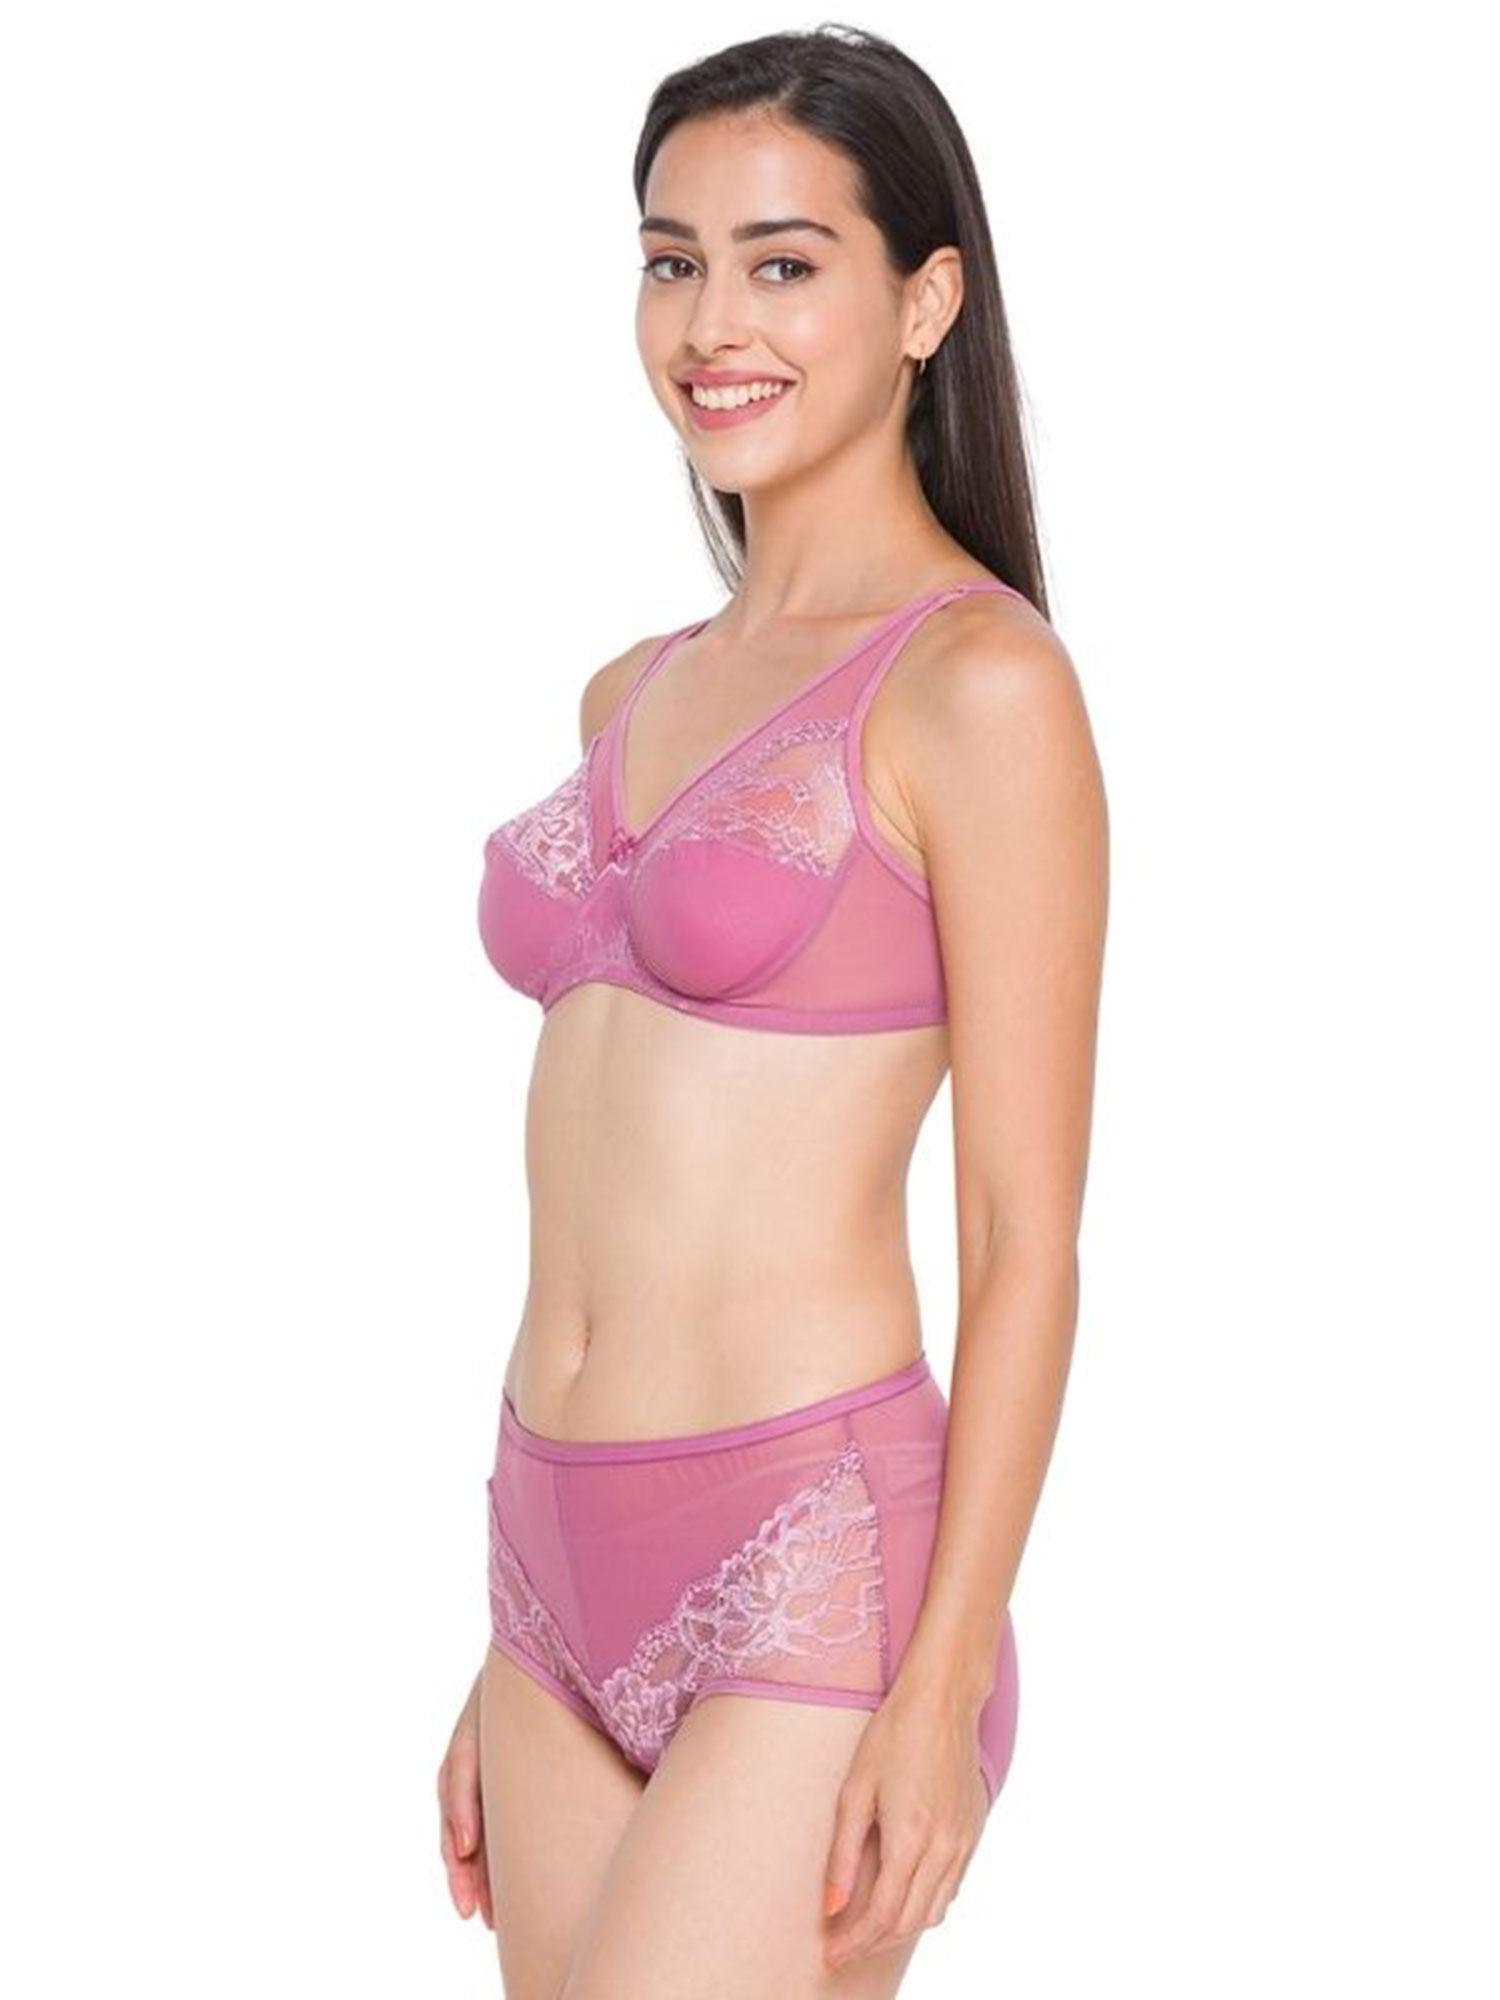 women lace lingerie set - pink